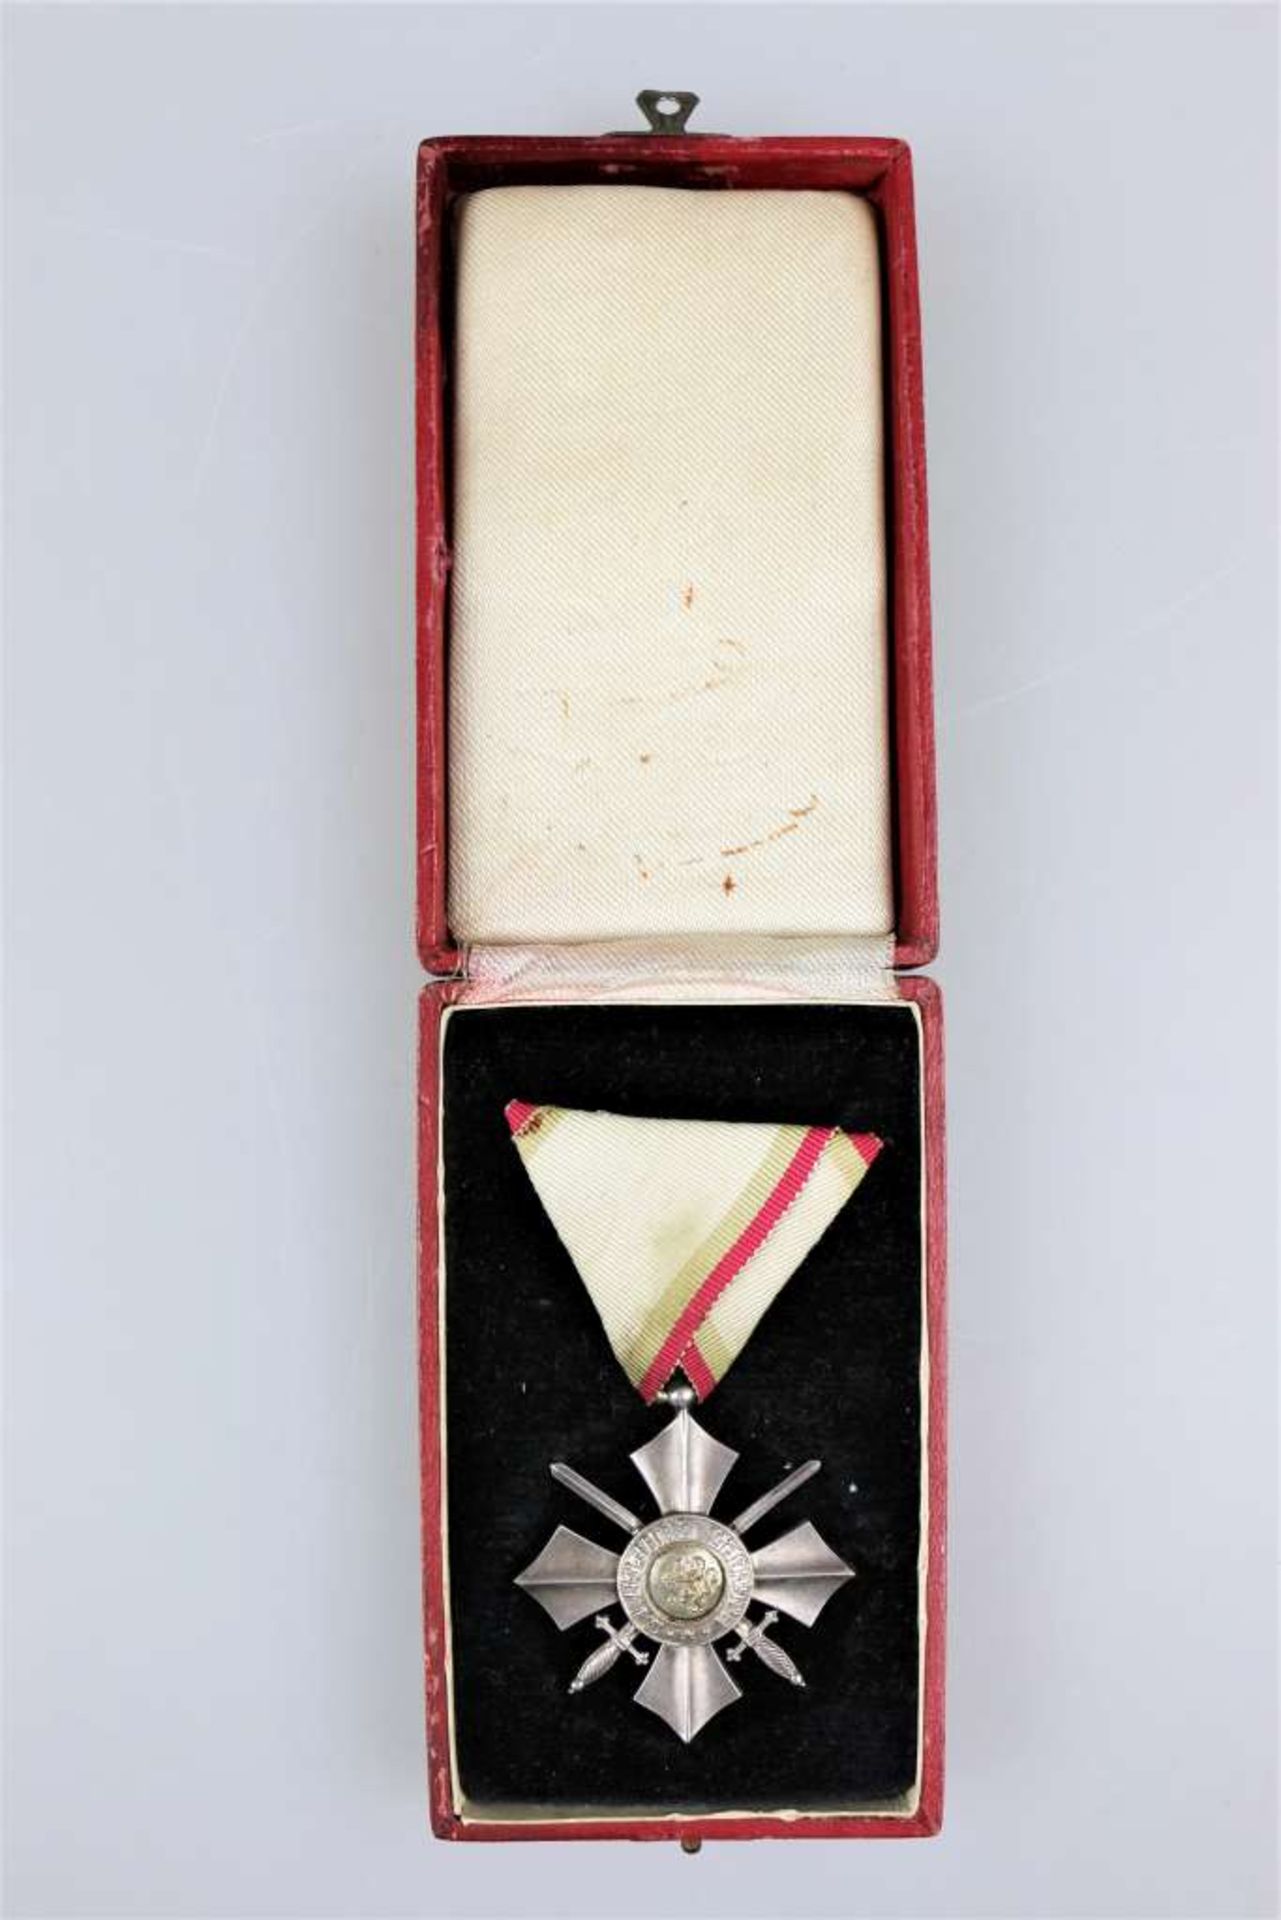 Bulgarien, Militärverdienst-Orden, silbernes Verdienstkreuz mit Schwertern am Dreiecksband im